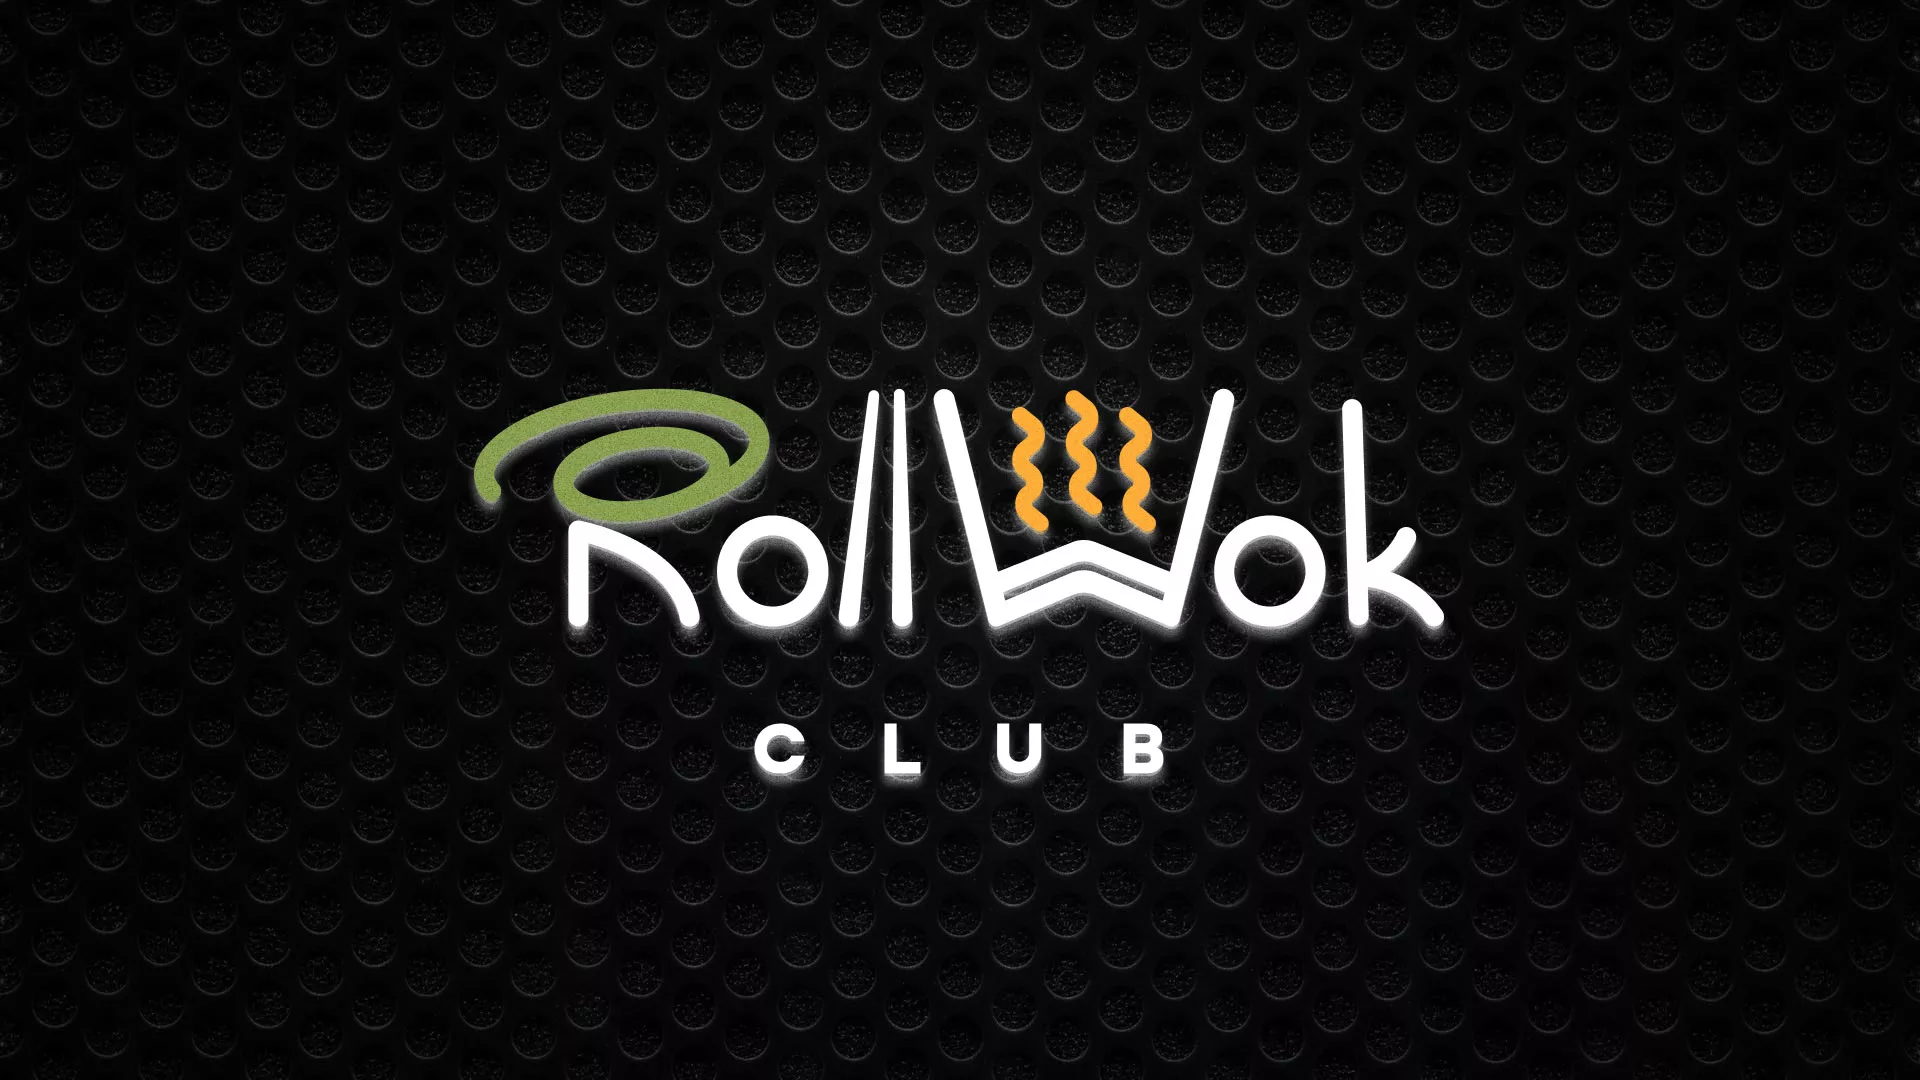 Брендирование торговых точек суши-бара «Roll Wok Club» в Владивостоке